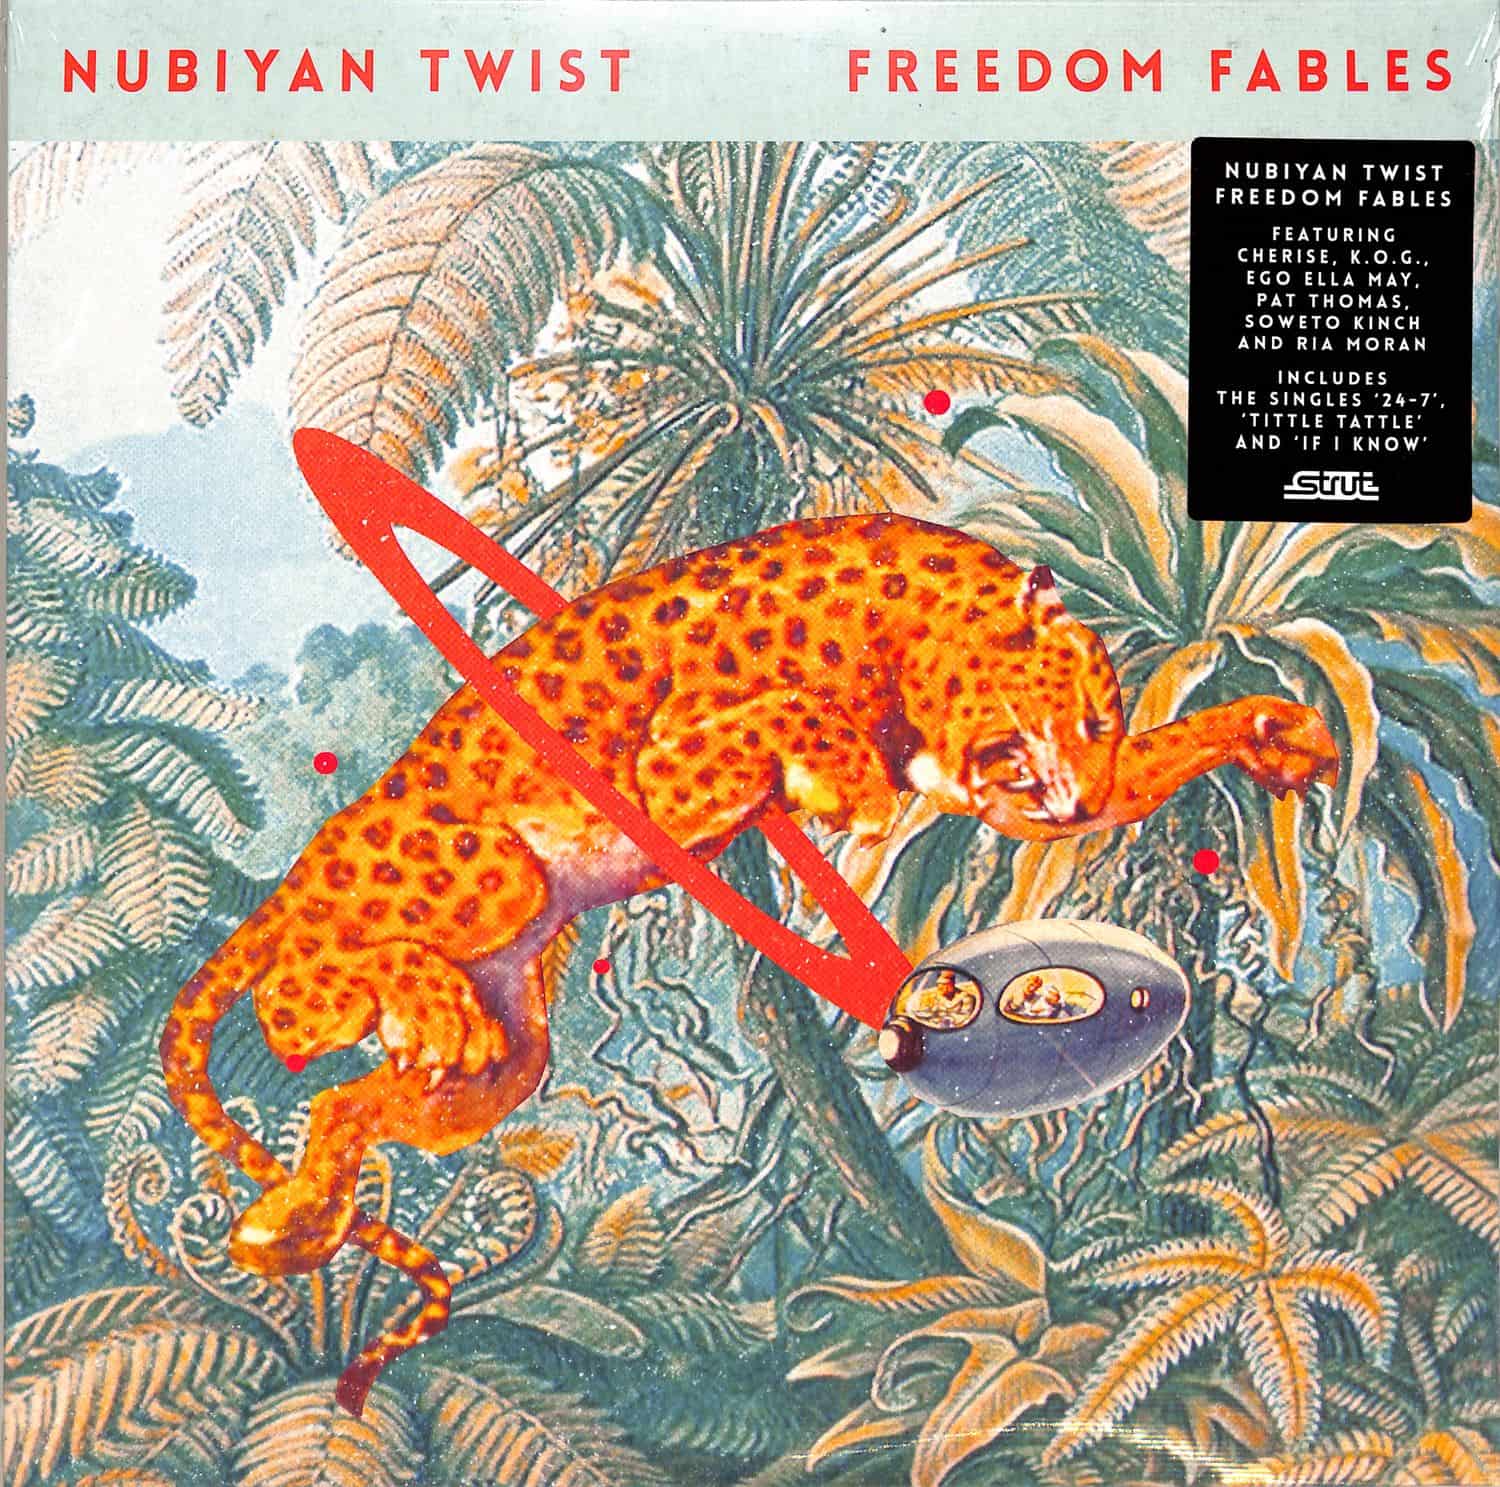 Nubiyan Twist - FREEDOM FABLES 